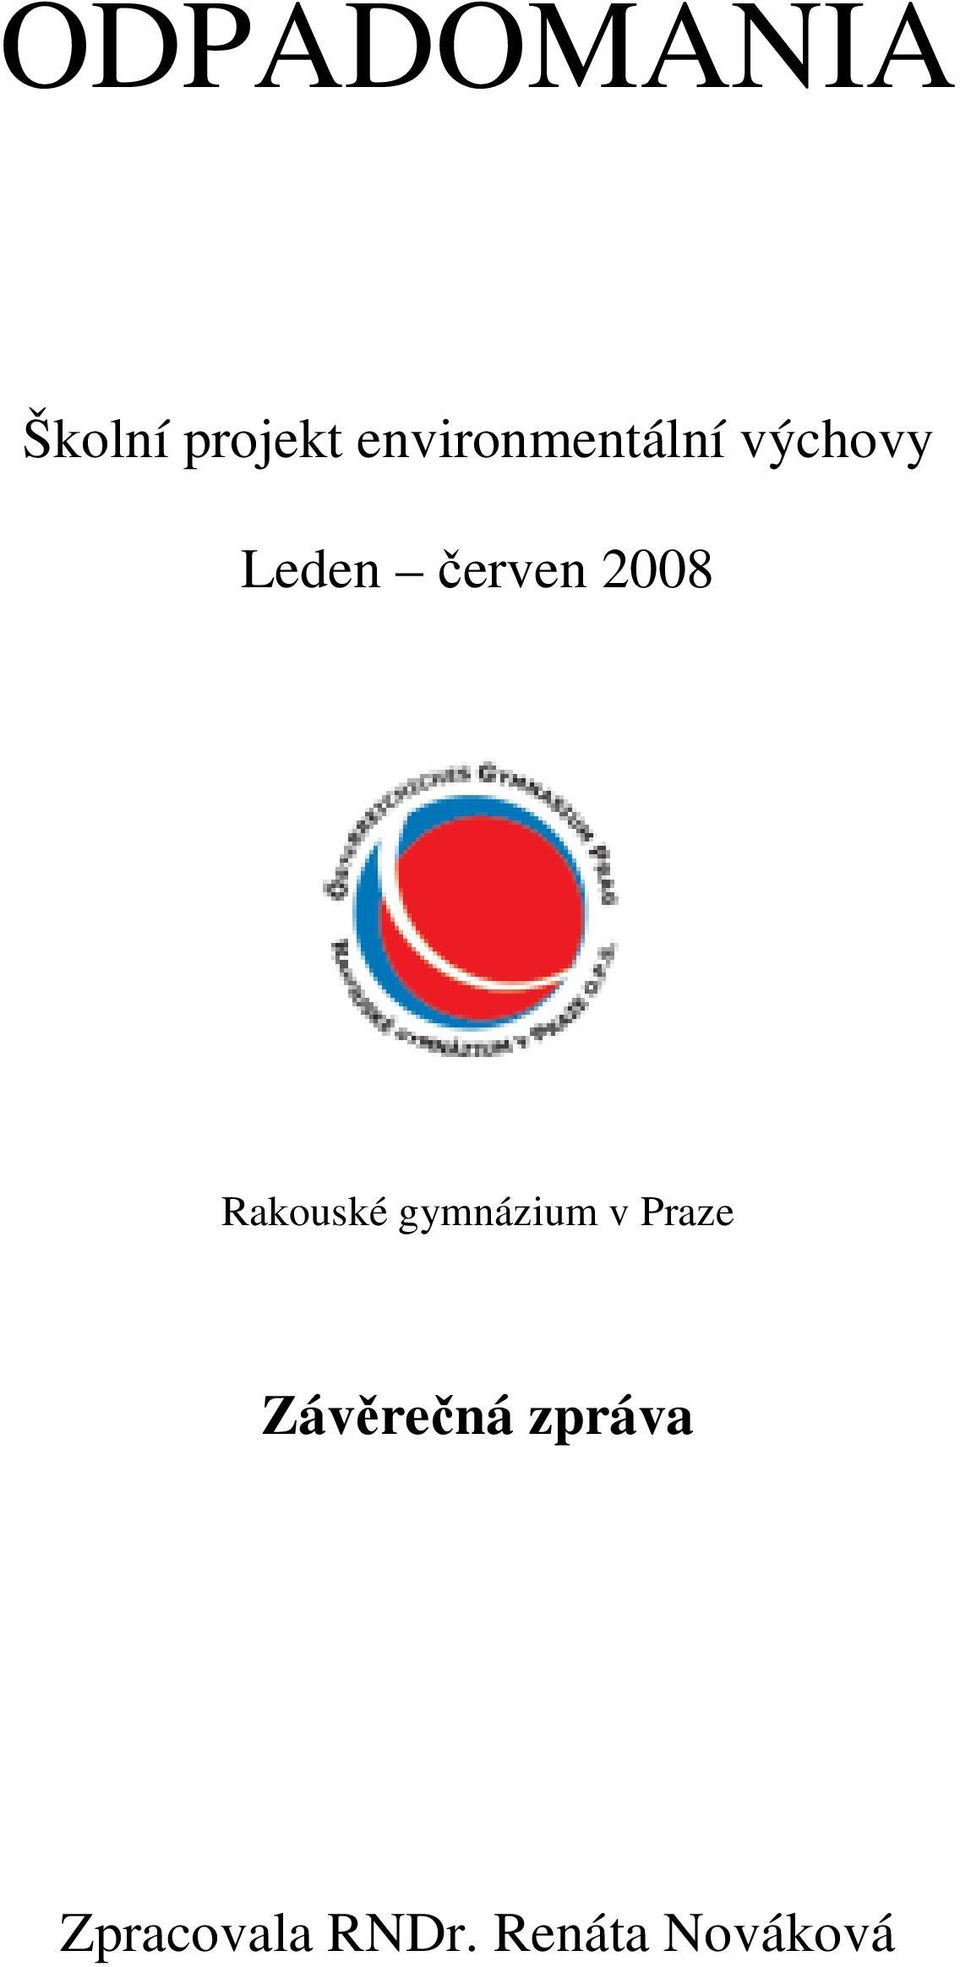 2008 Rakouské gymnázium v Praze